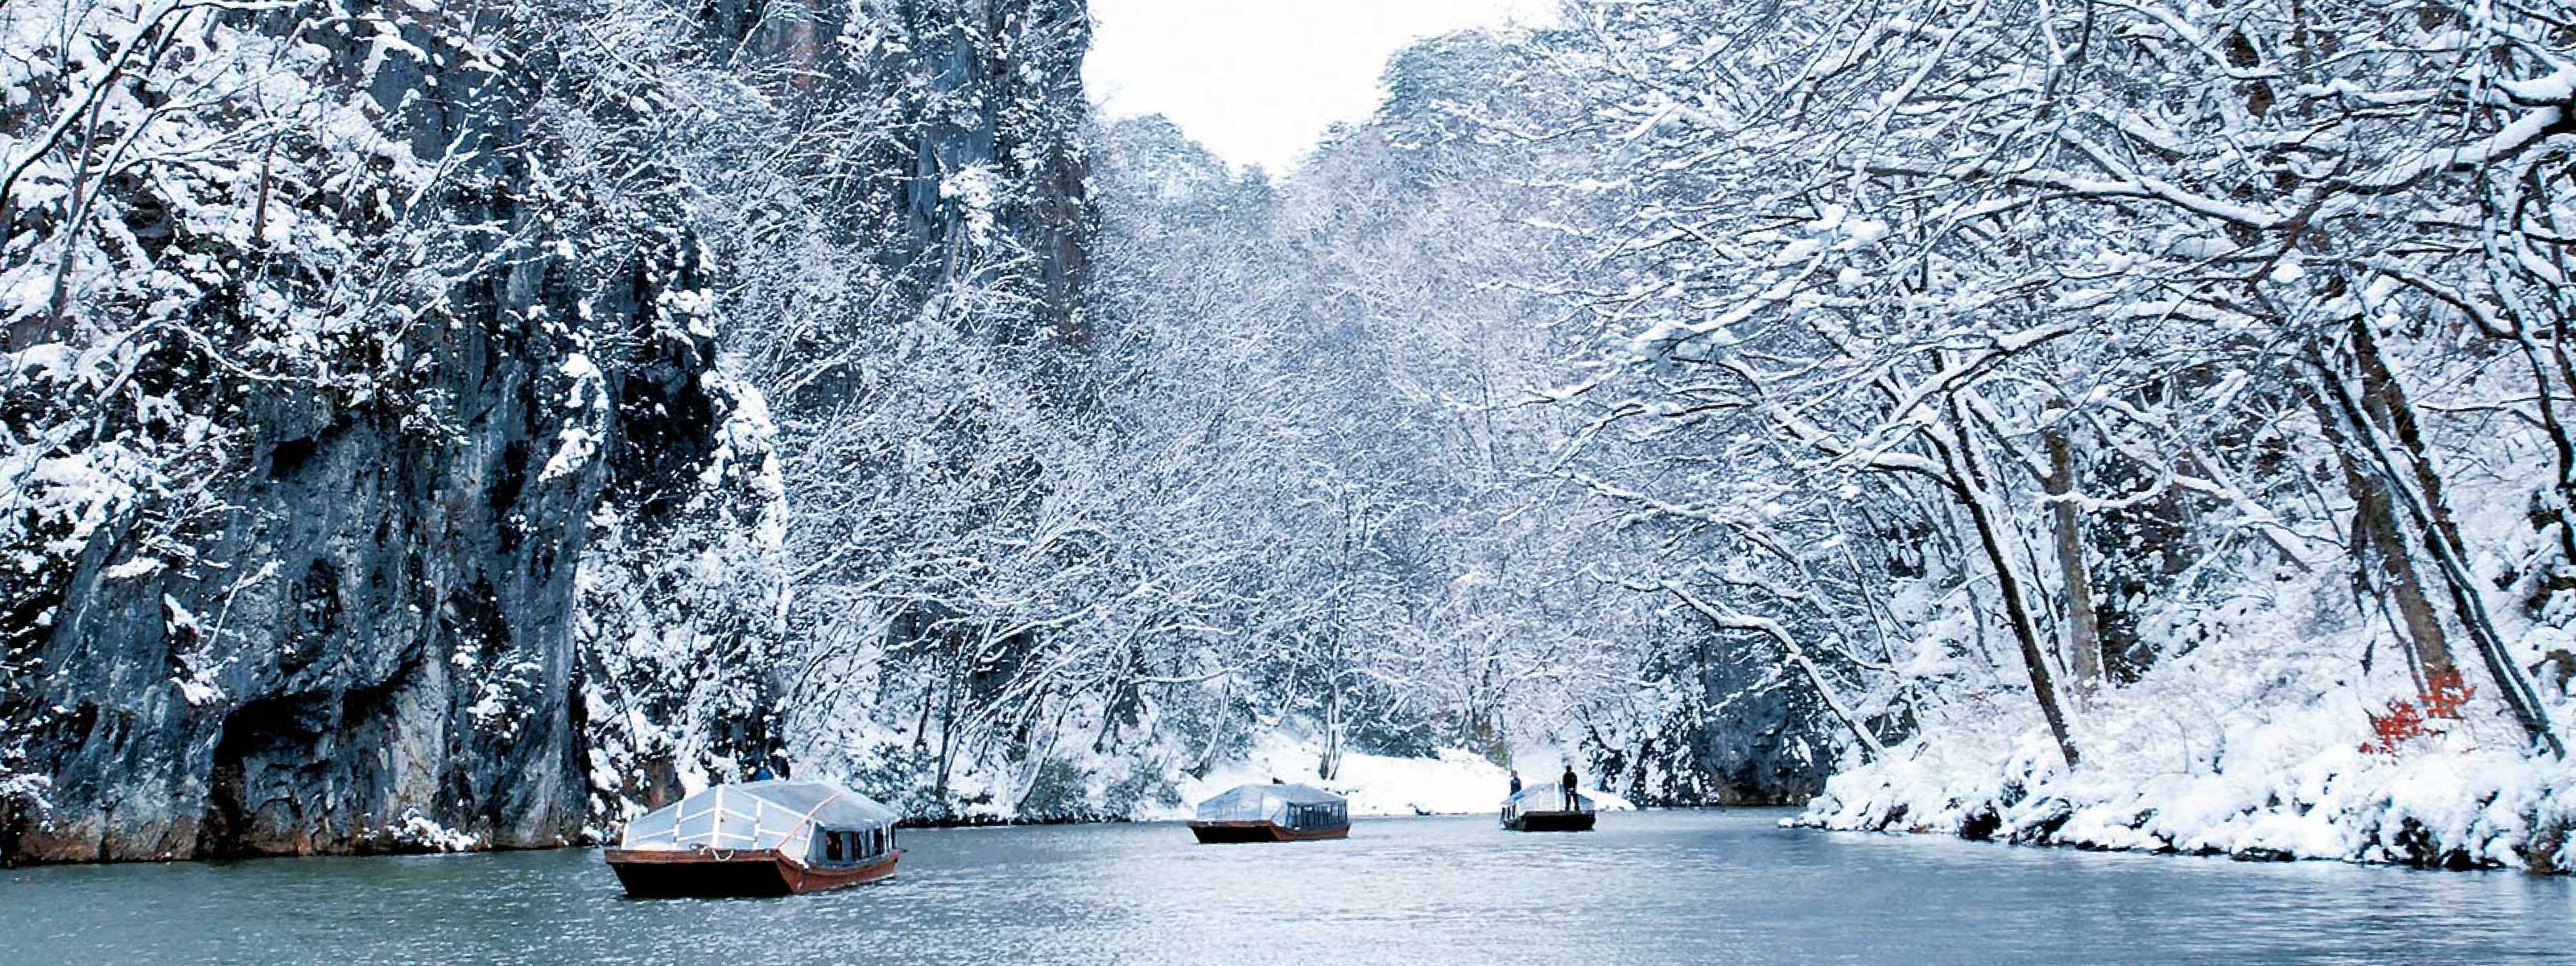 冬の特集 清静 日本百景の渓谷美 特集 いち旅 一関市公式観光サイト いちのせき観光navi